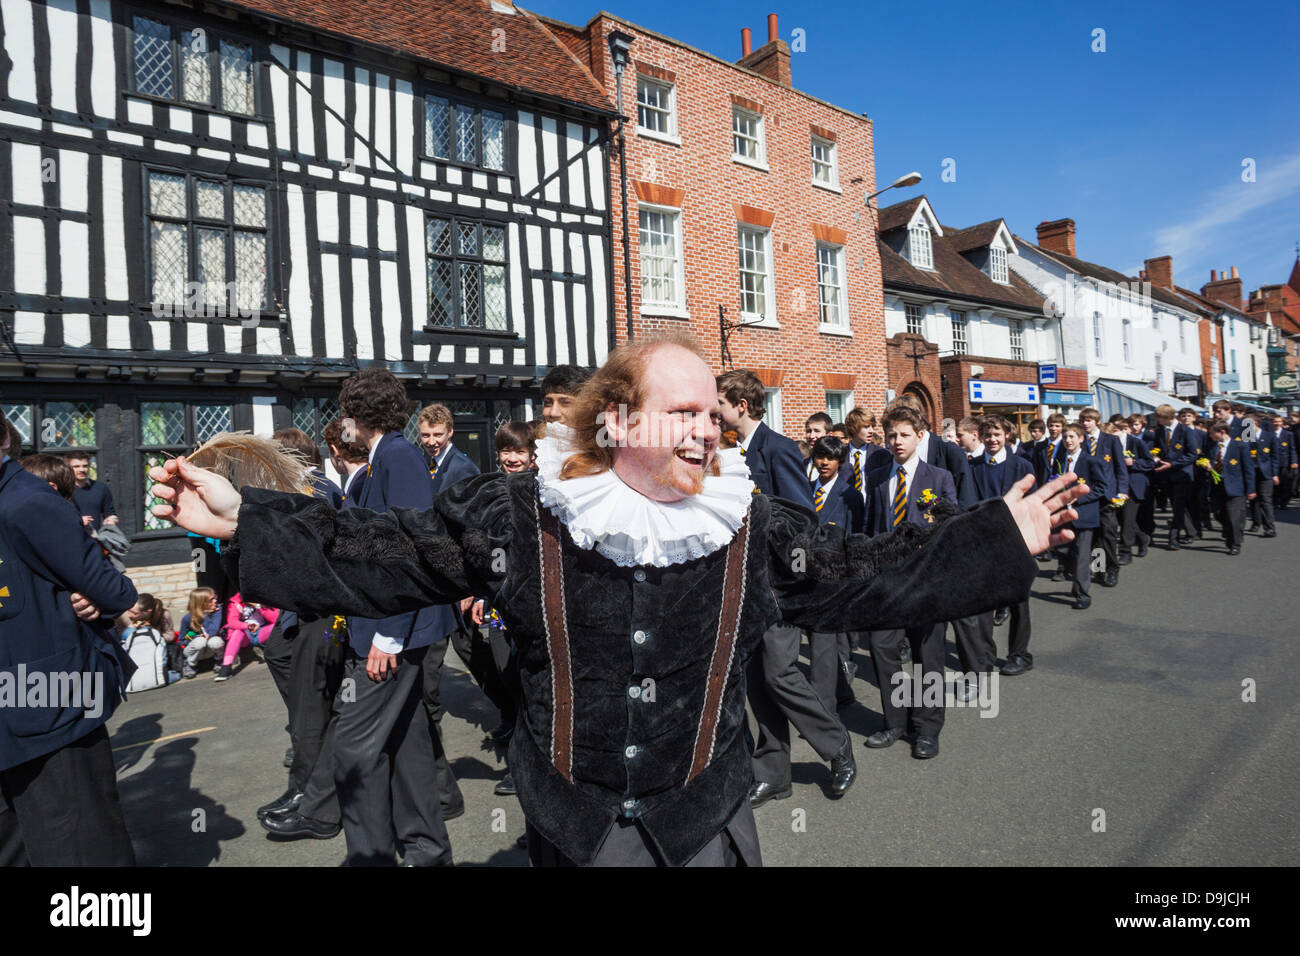 England, Warwickshire, Stratford-upon-Avon, Shakespeare's Geburtstag Parade, Porträt von William Shakespeare Charakter Stockfoto